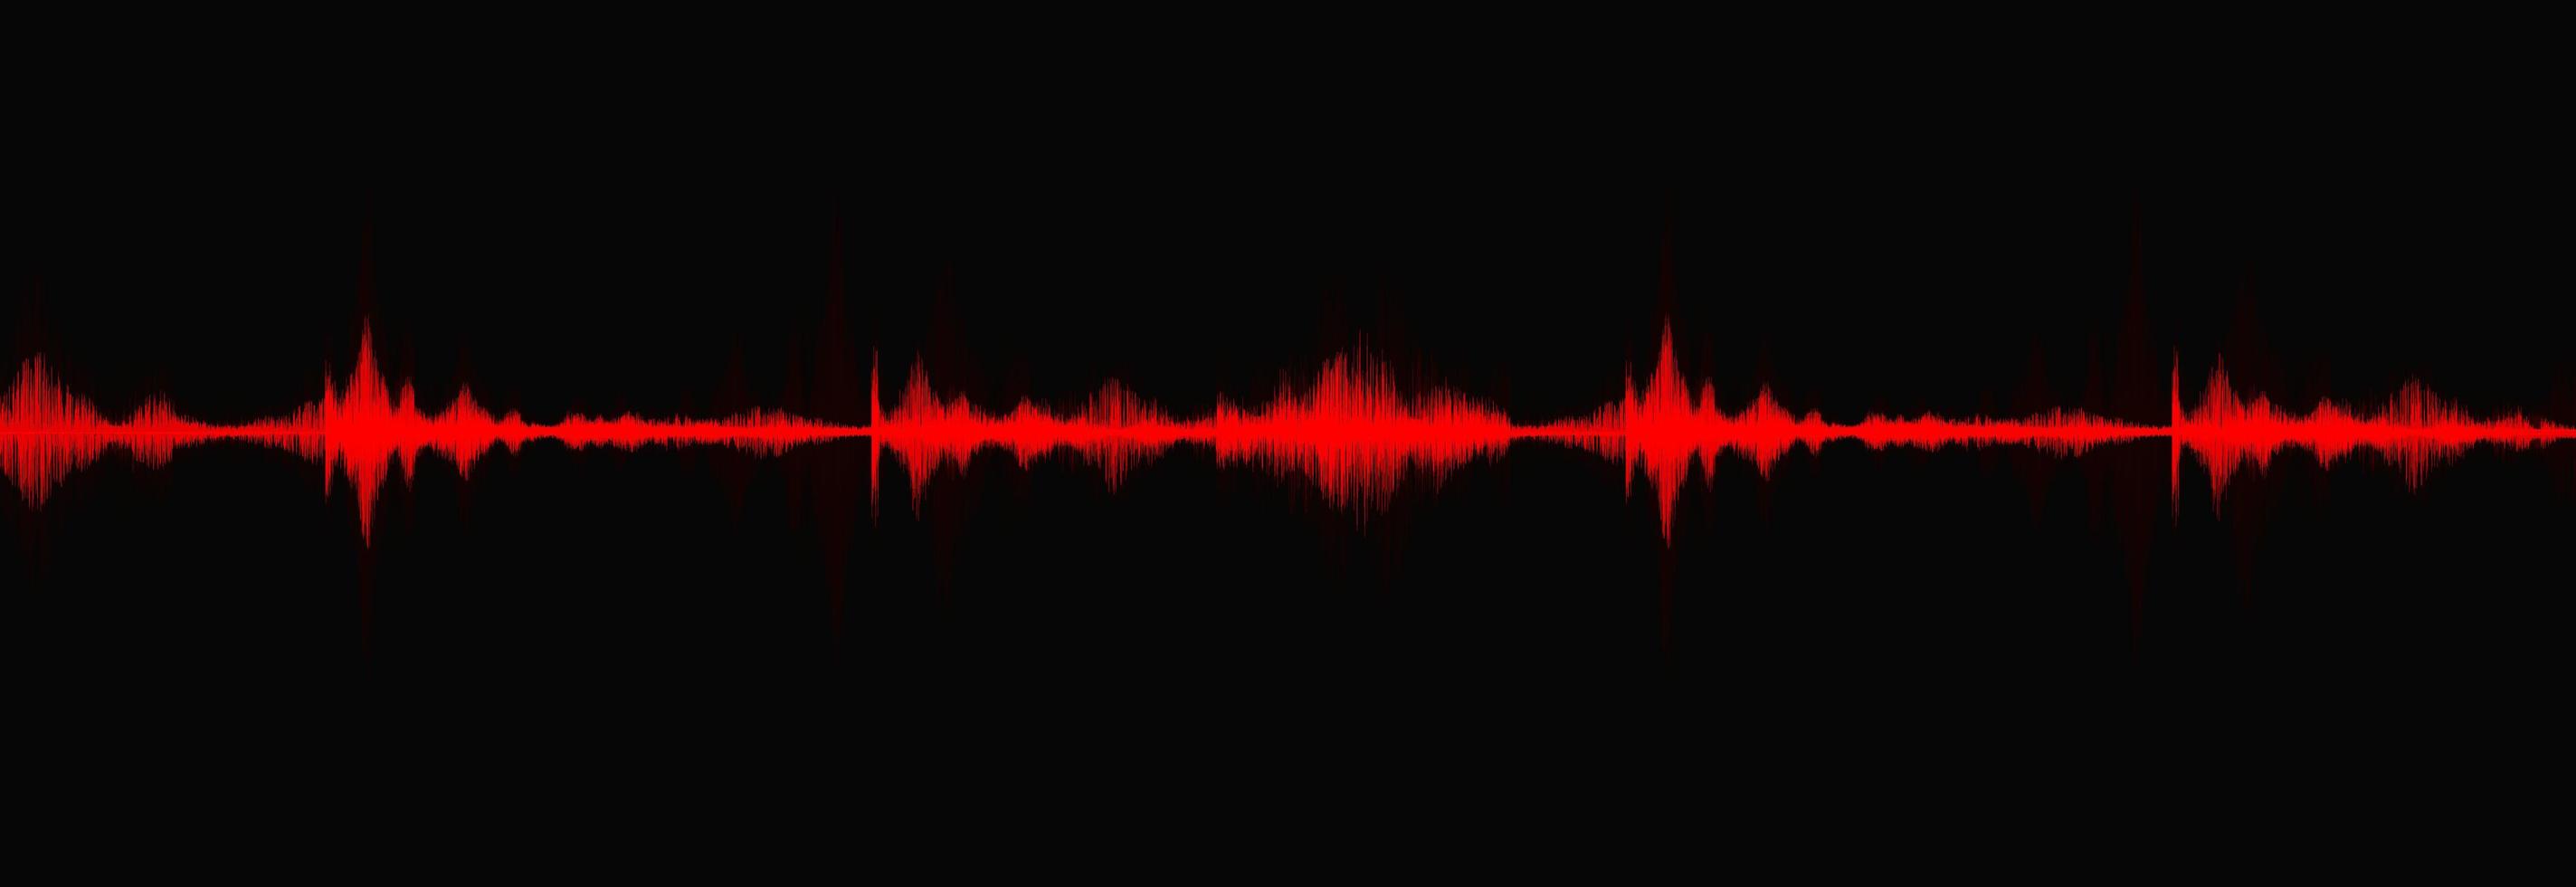 blodröd digital ljudvåg låg och hög rikare skala på svart bakgrund, teknik- och jordbävningsvågdiagram och rörligt hjärtkoncept, design för musikstudio och vetenskap, vektorillustration. vektor